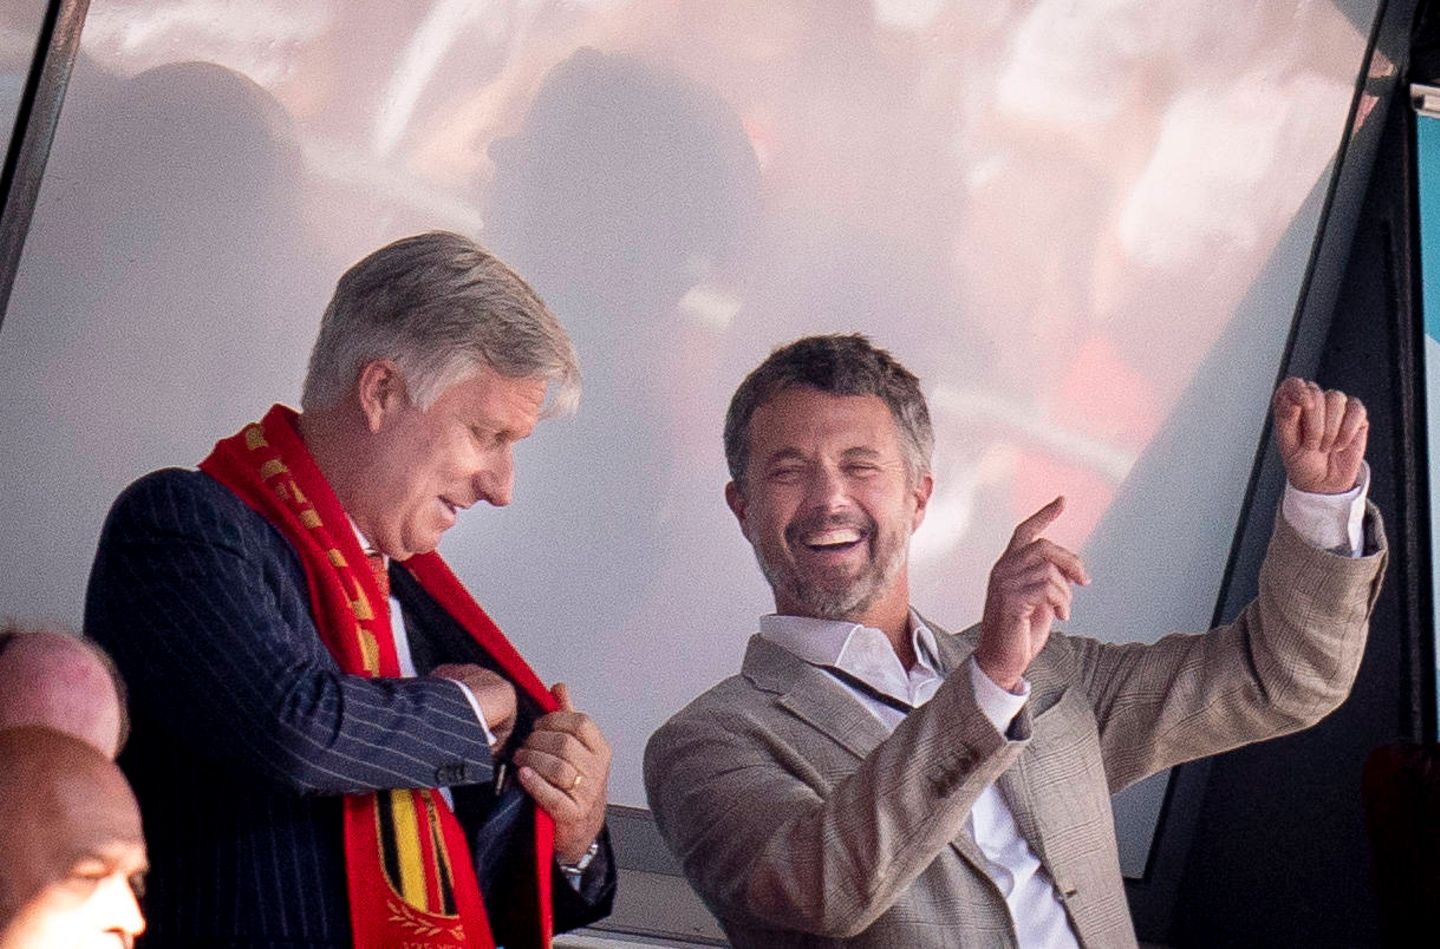 Auch ein weiterer berühmter Fußball-Fan will sich dieses EM-Spiel nicht entgehen lassen: Es ist König Philippe von Belgien. Die beiden Männer scheinen sich während der Partie gut unterhalten zu fühlen.